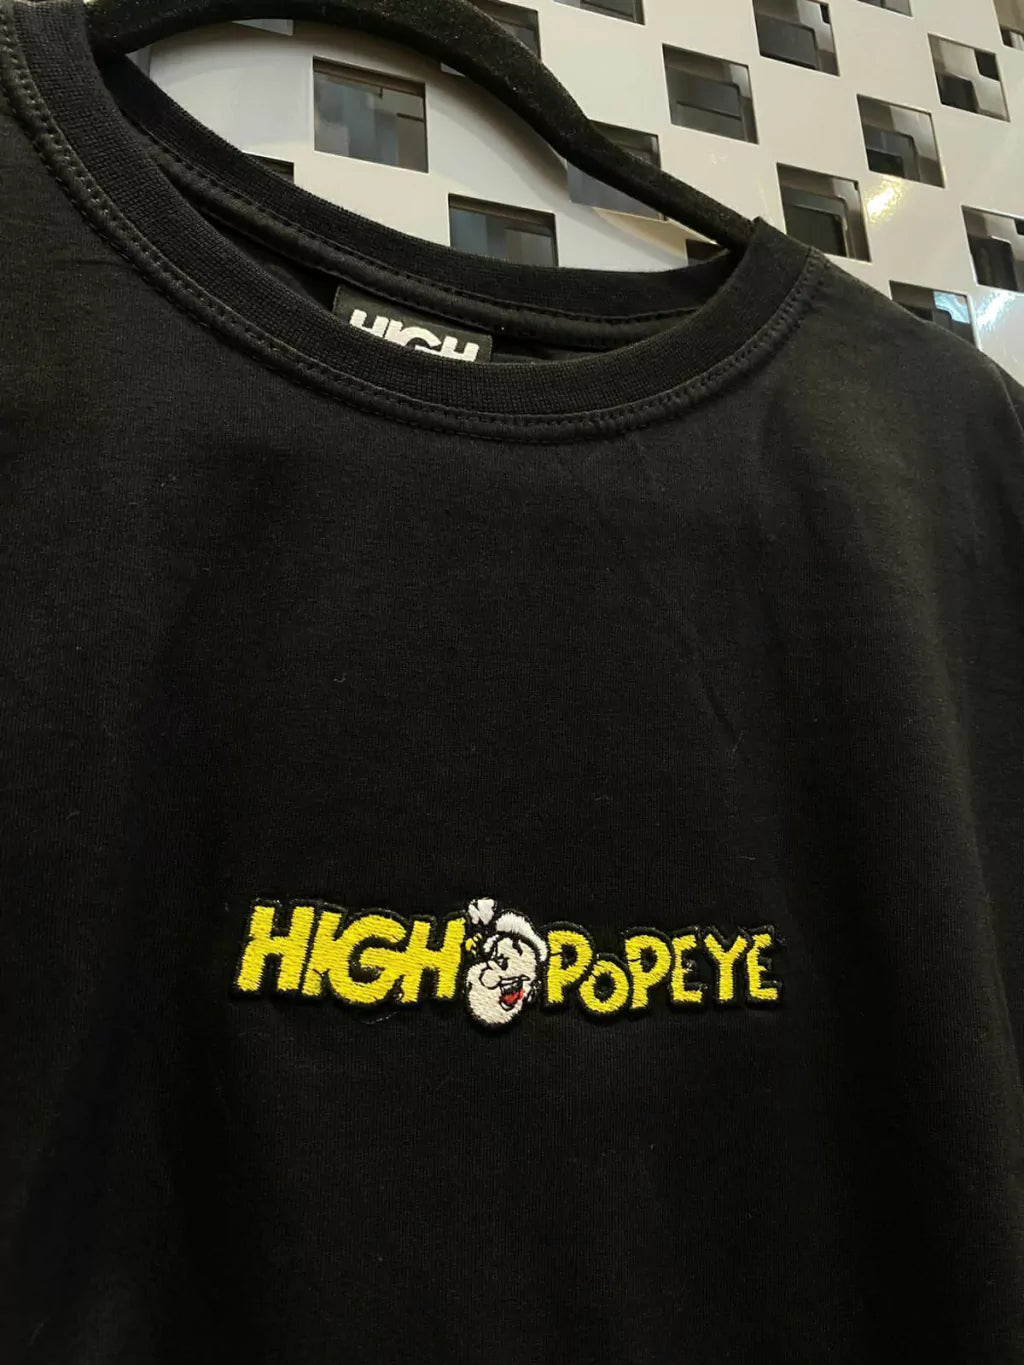 Camiseta high Popeye bordada – Iconnic company